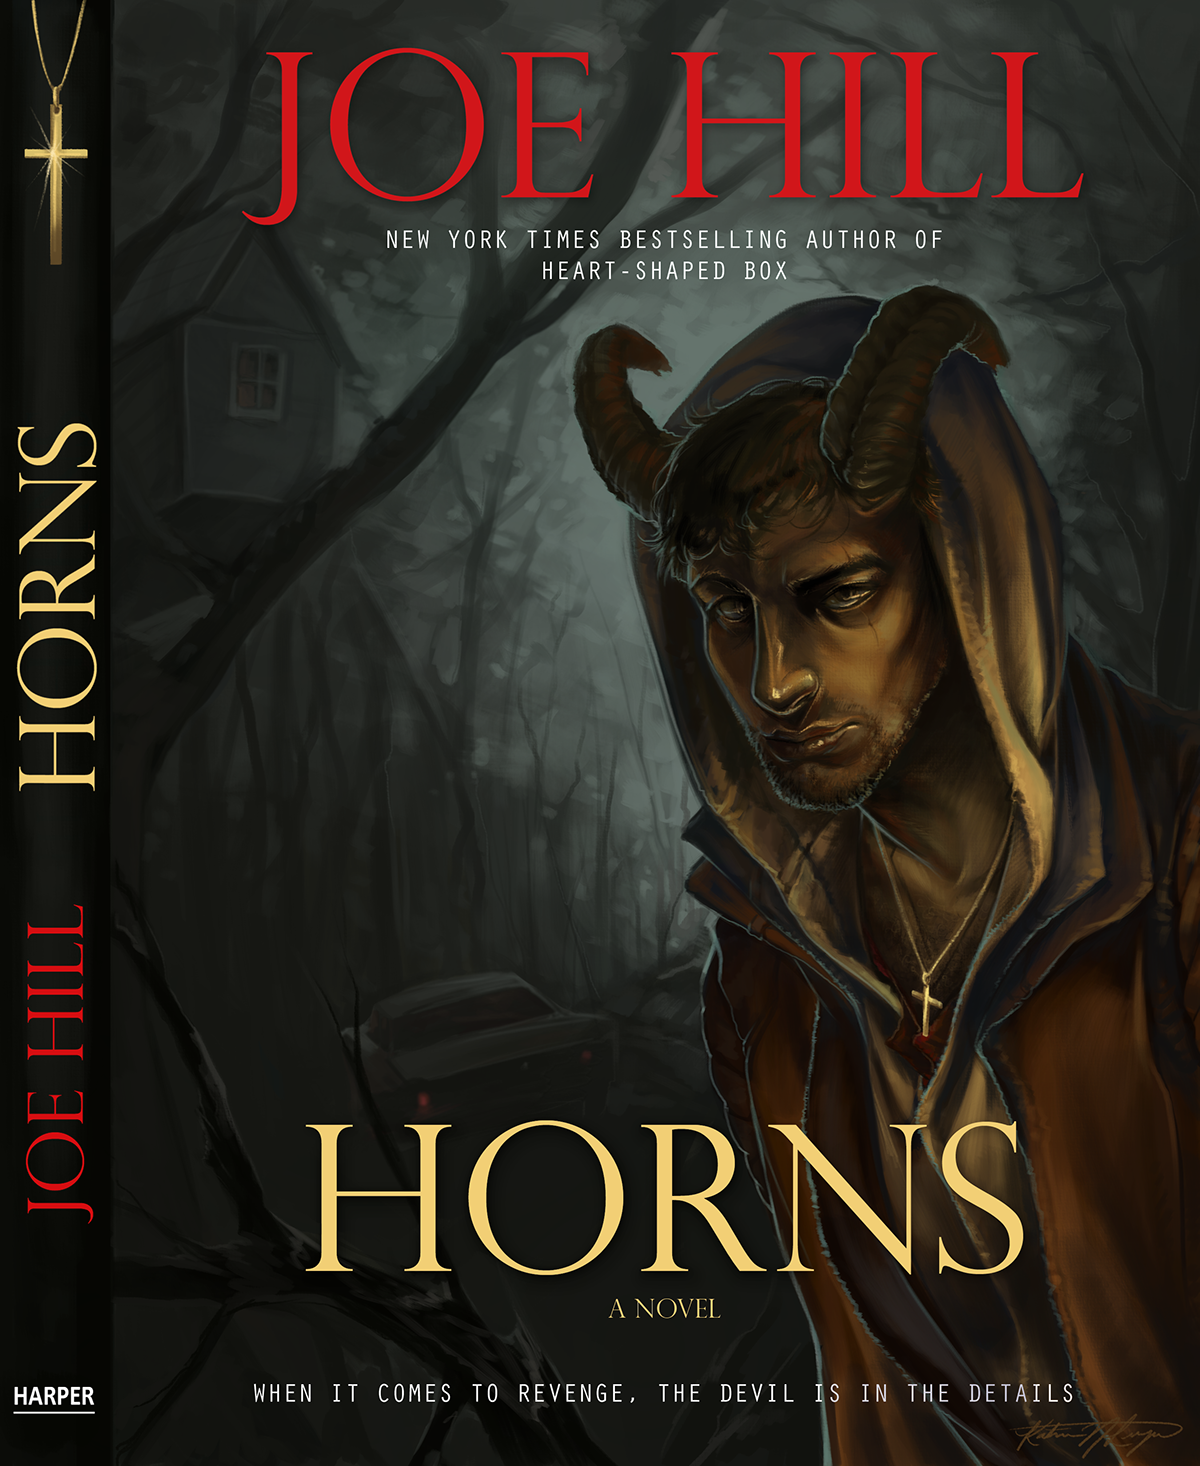 horns Joe Hill book cover cover illustration novel digital illustration cross devil Treehouse